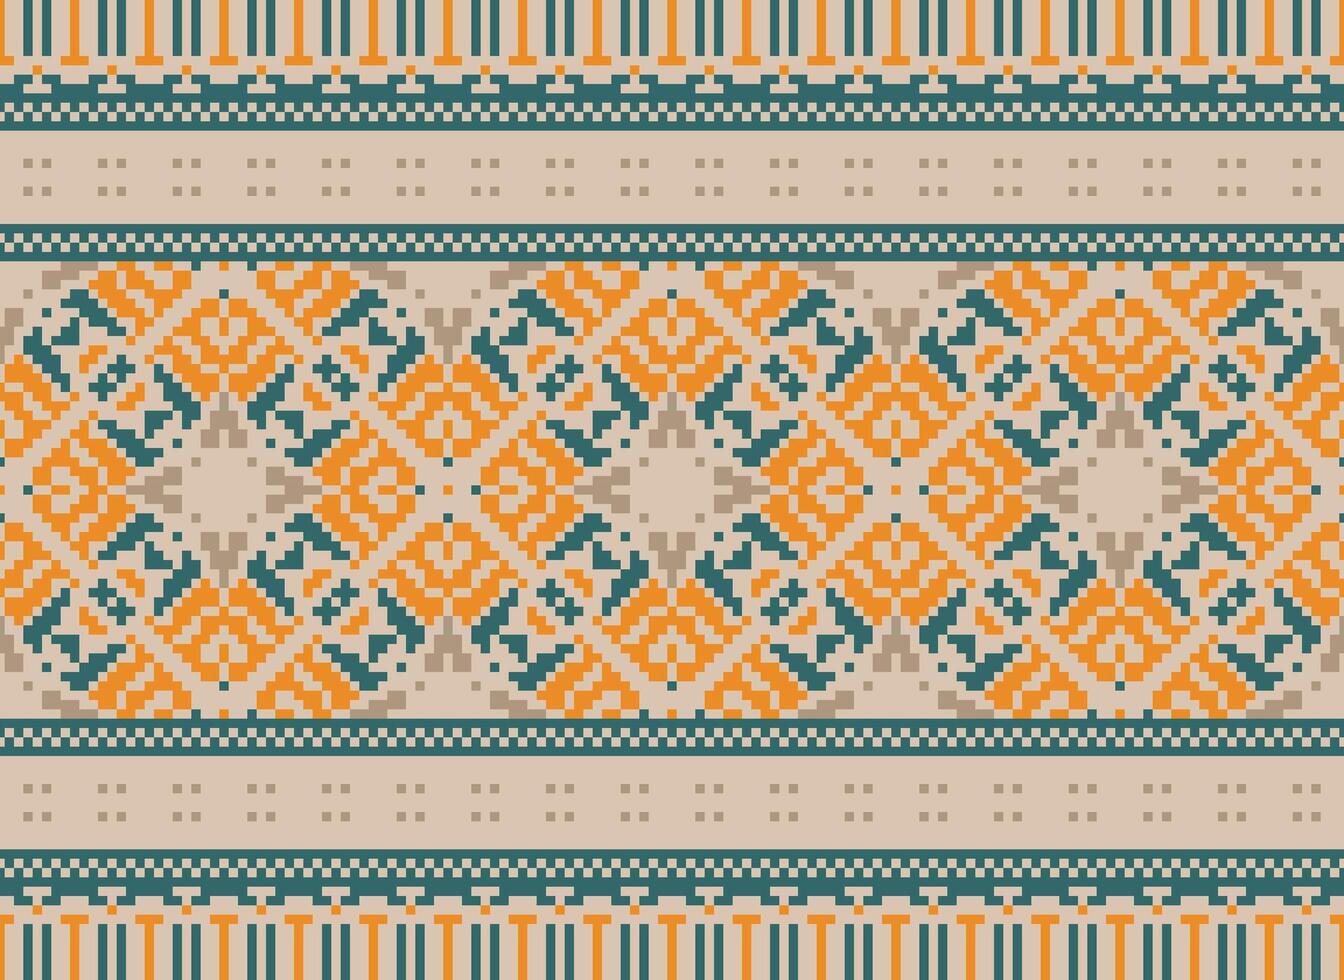 millésimes traverser point traditionnel ethnique modèle paisley fleur ikat Contexte abstrait aztèque africain indonésien Indien sans couture modèle pour en tissu impression tissu robe tapis rideaux et sarong vecteur